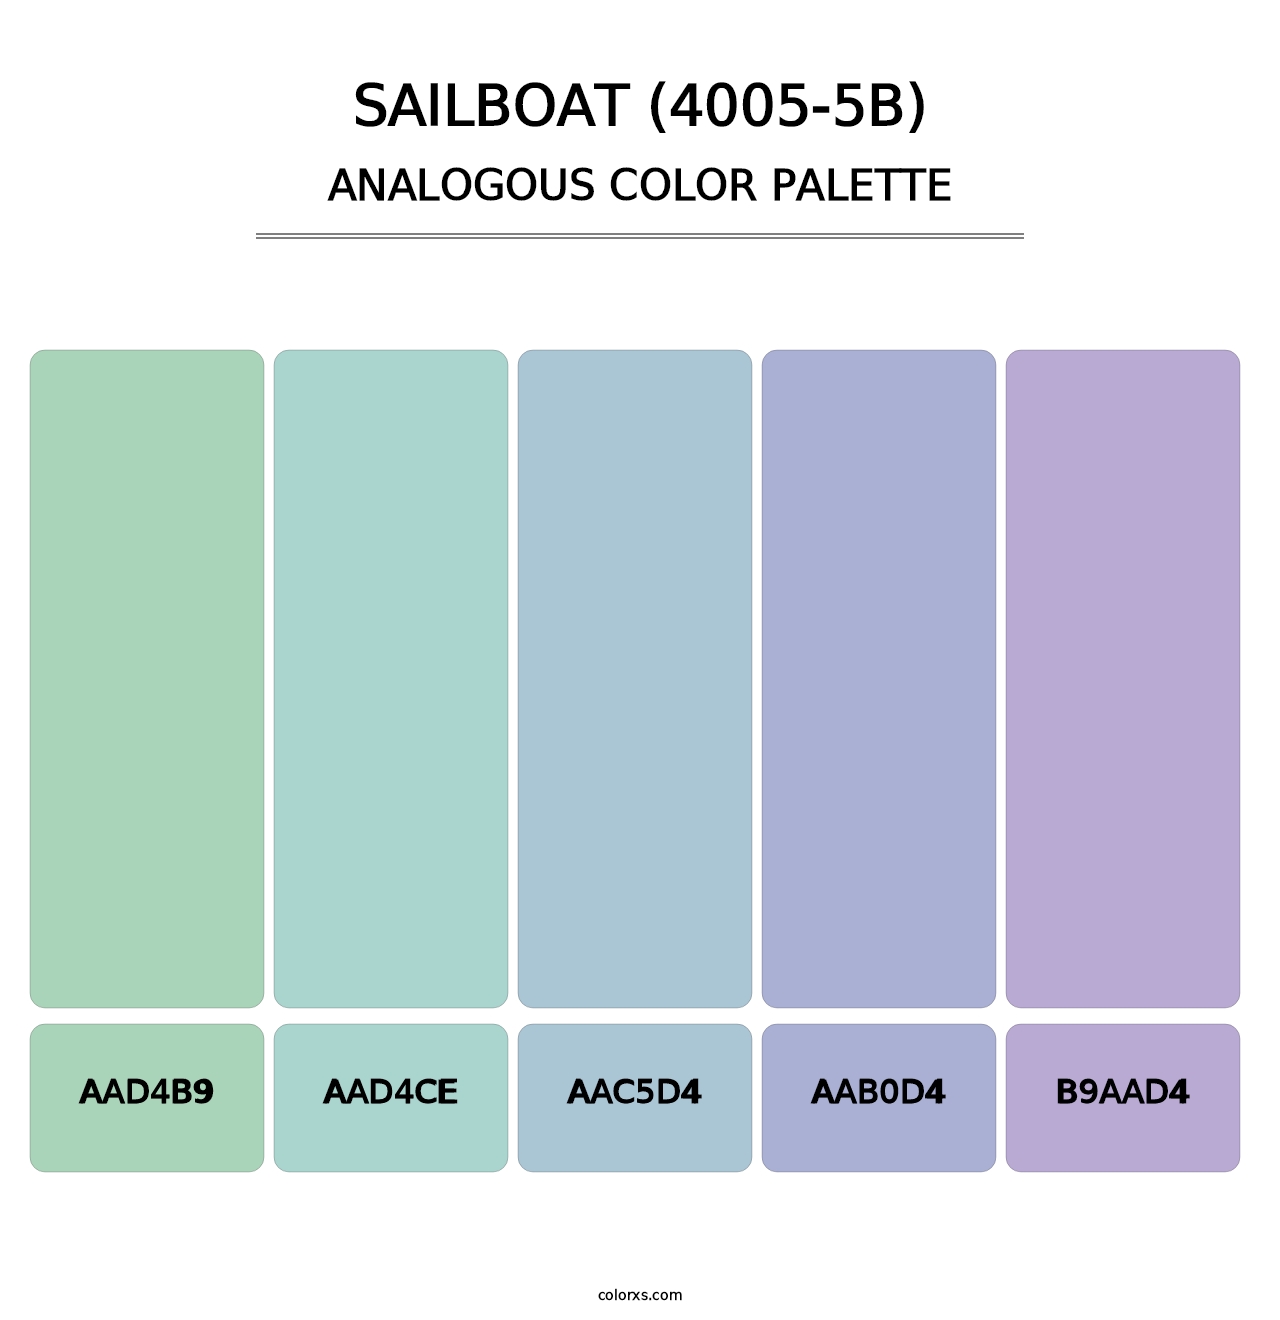 Sailboat (4005-5B) - Analogous Color Palette